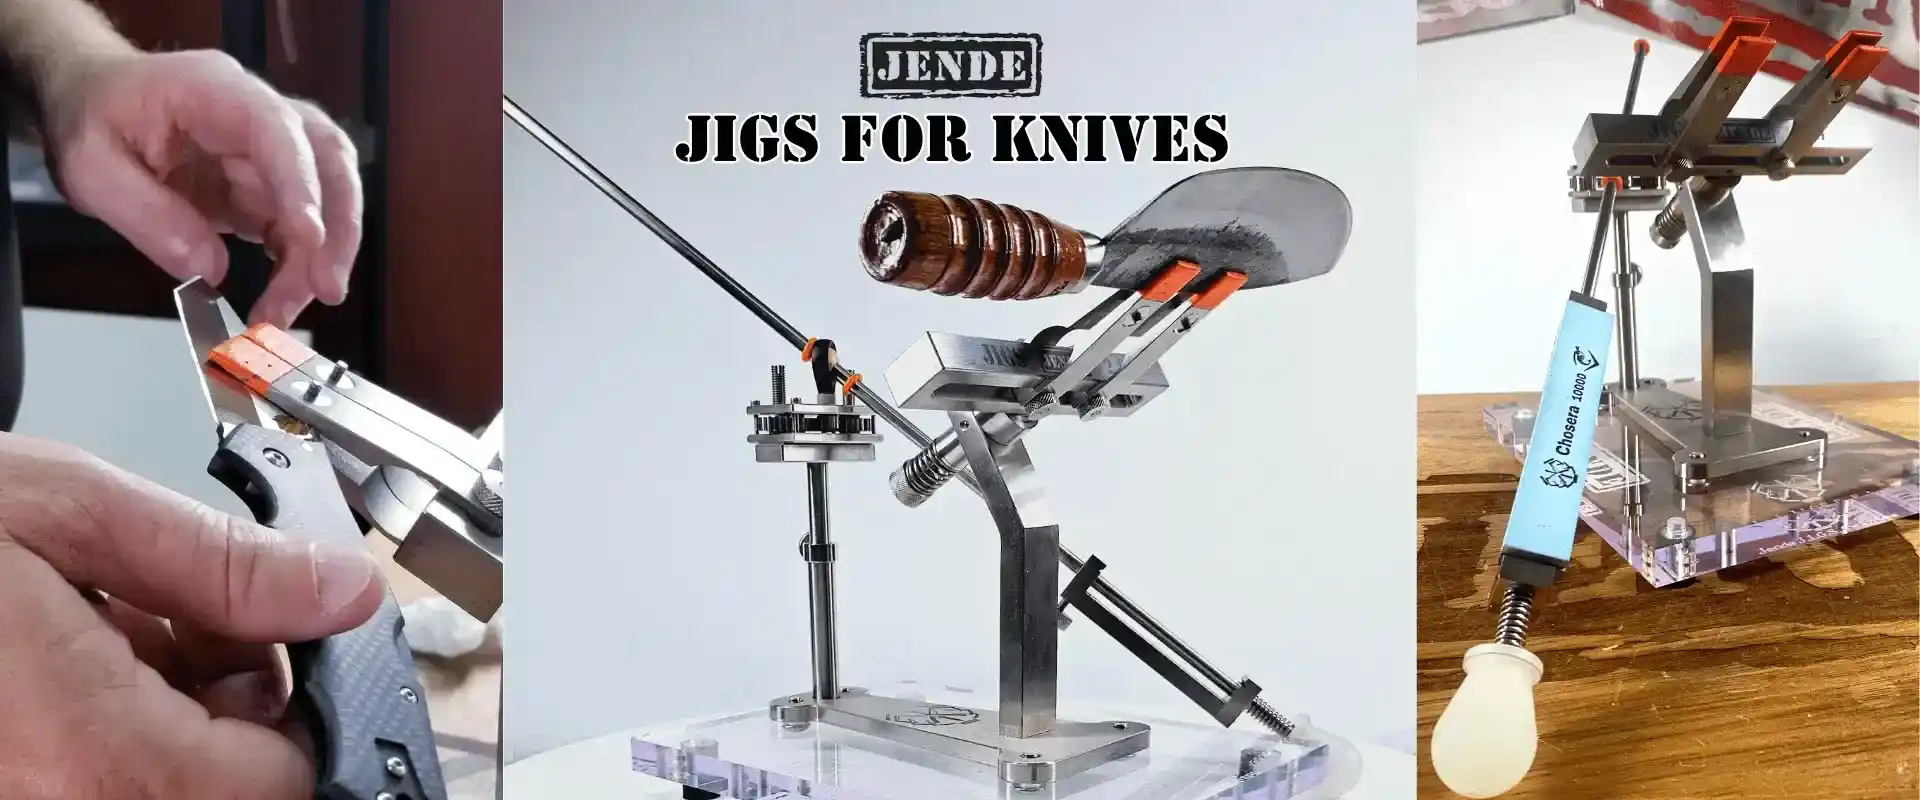 Jende-Jigs-tunaknives